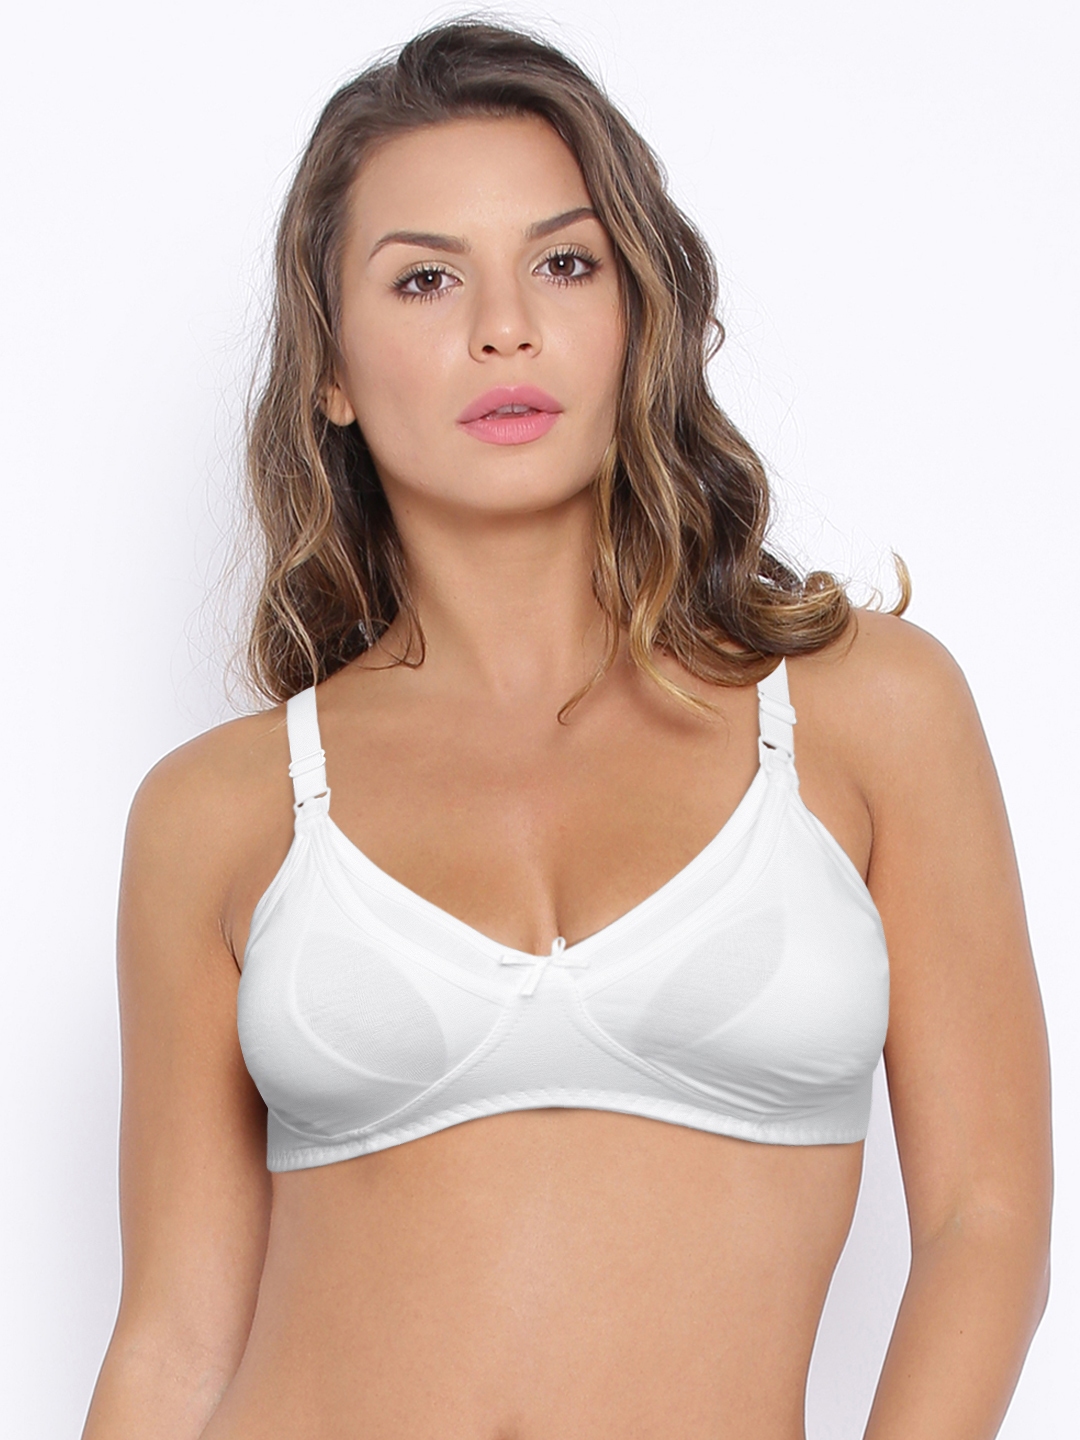 Buy Hanes Cotton Comfort White Maternity Bra G709-001 - Bra for